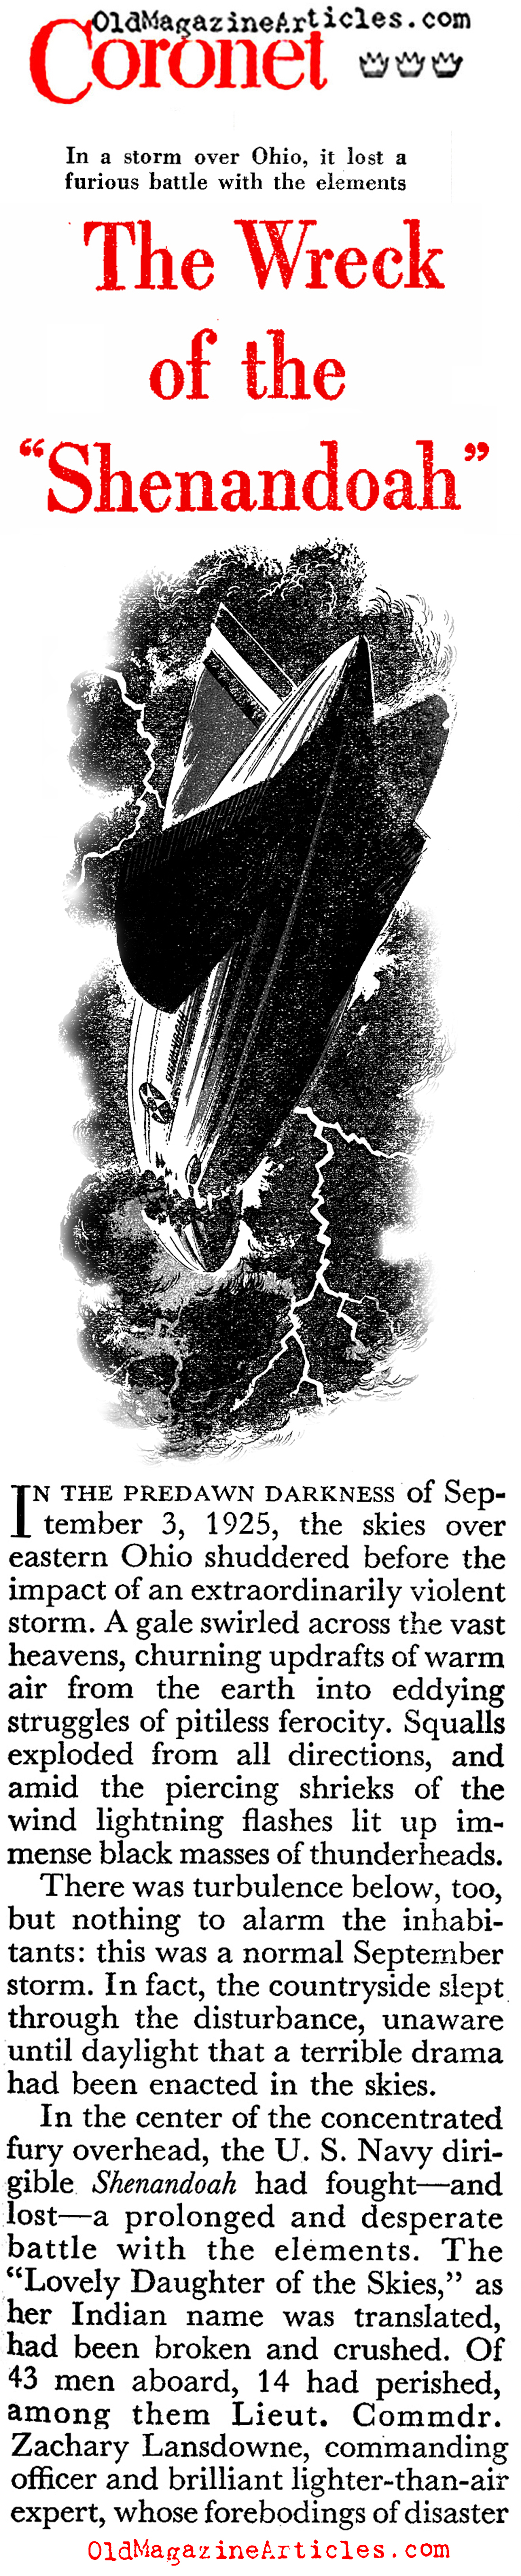 The Destruction of the <i>Shenandoah</i> (Coronet Magazine, 1949)